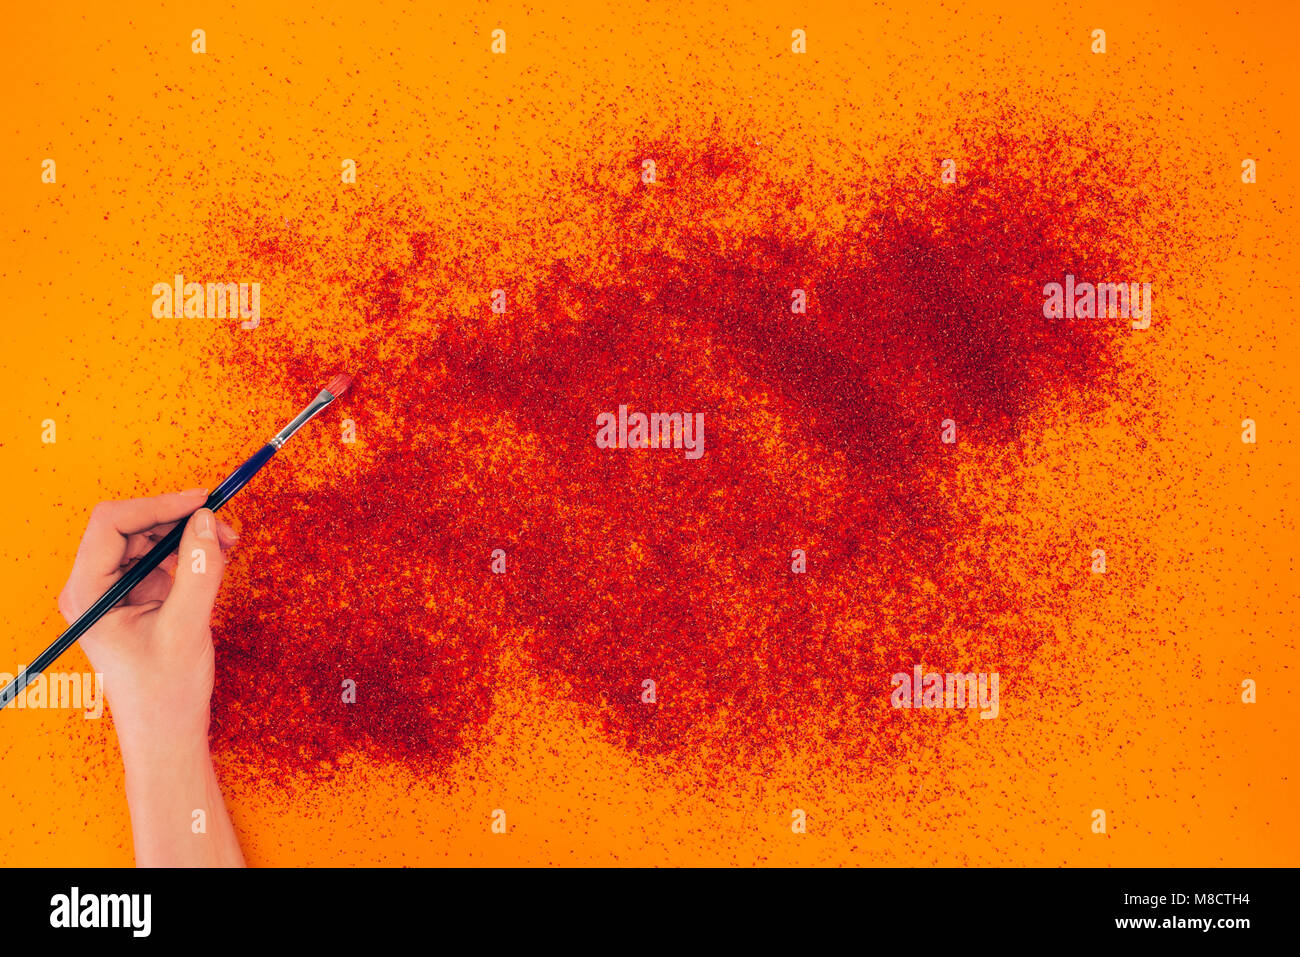 cropped image of woman making sand animation on orange Stock Photo